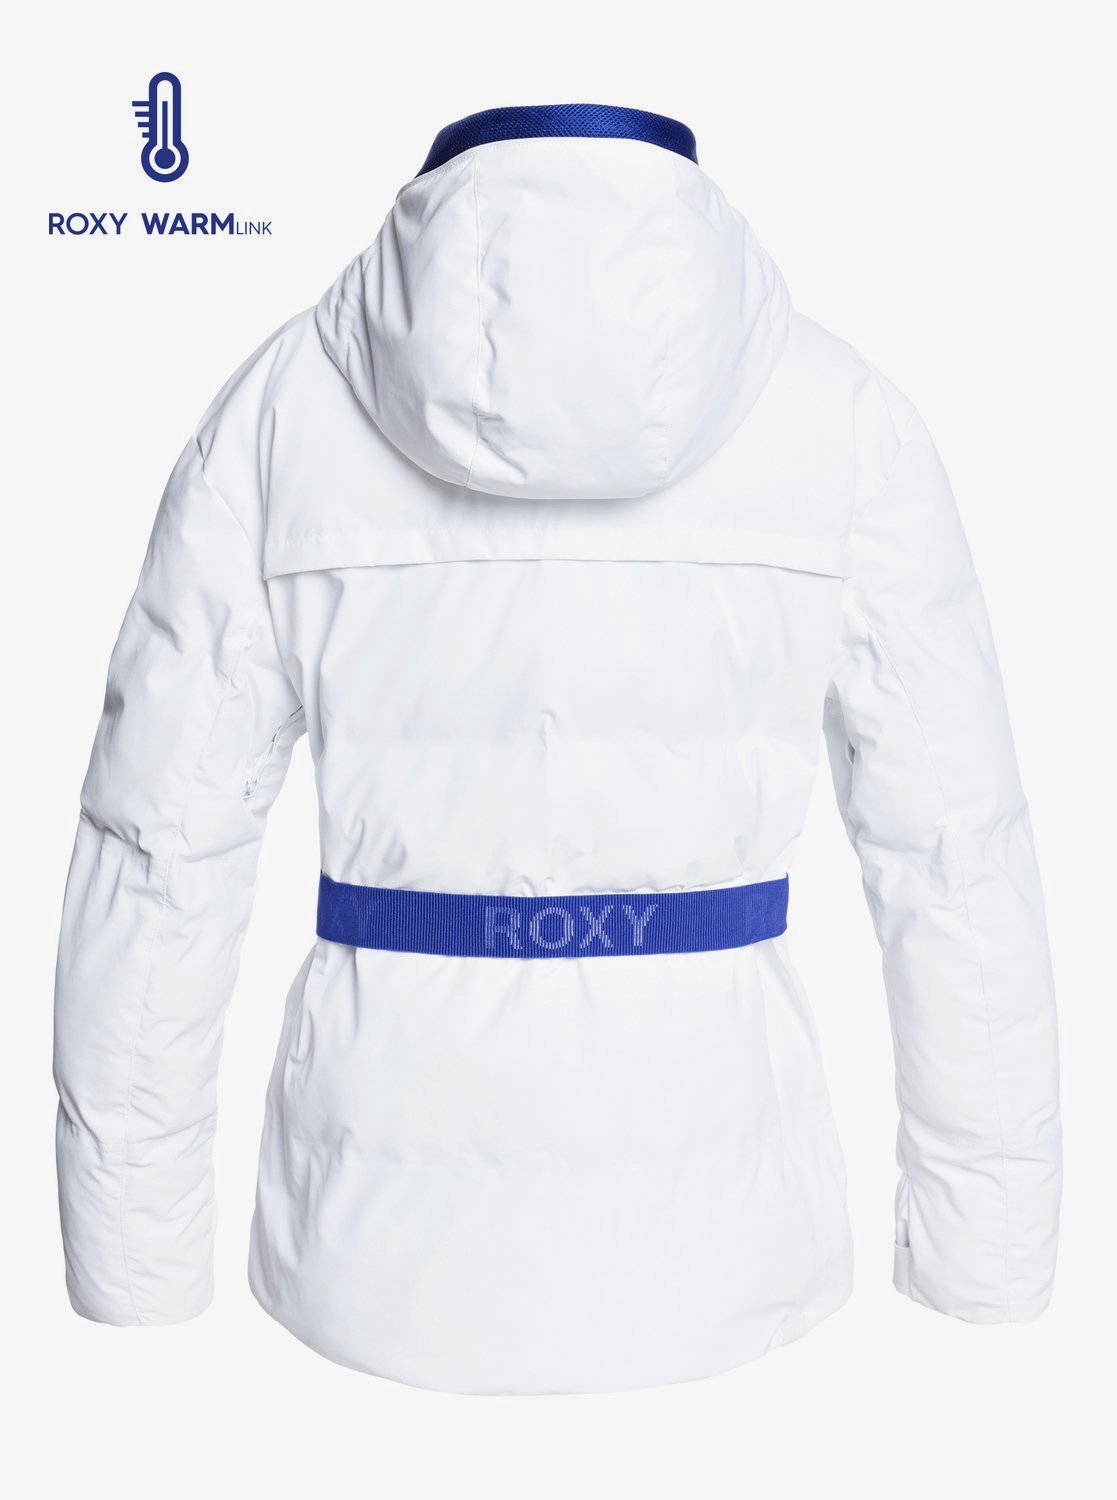 Roxy Women's Premiere Snow Jacket White Back View